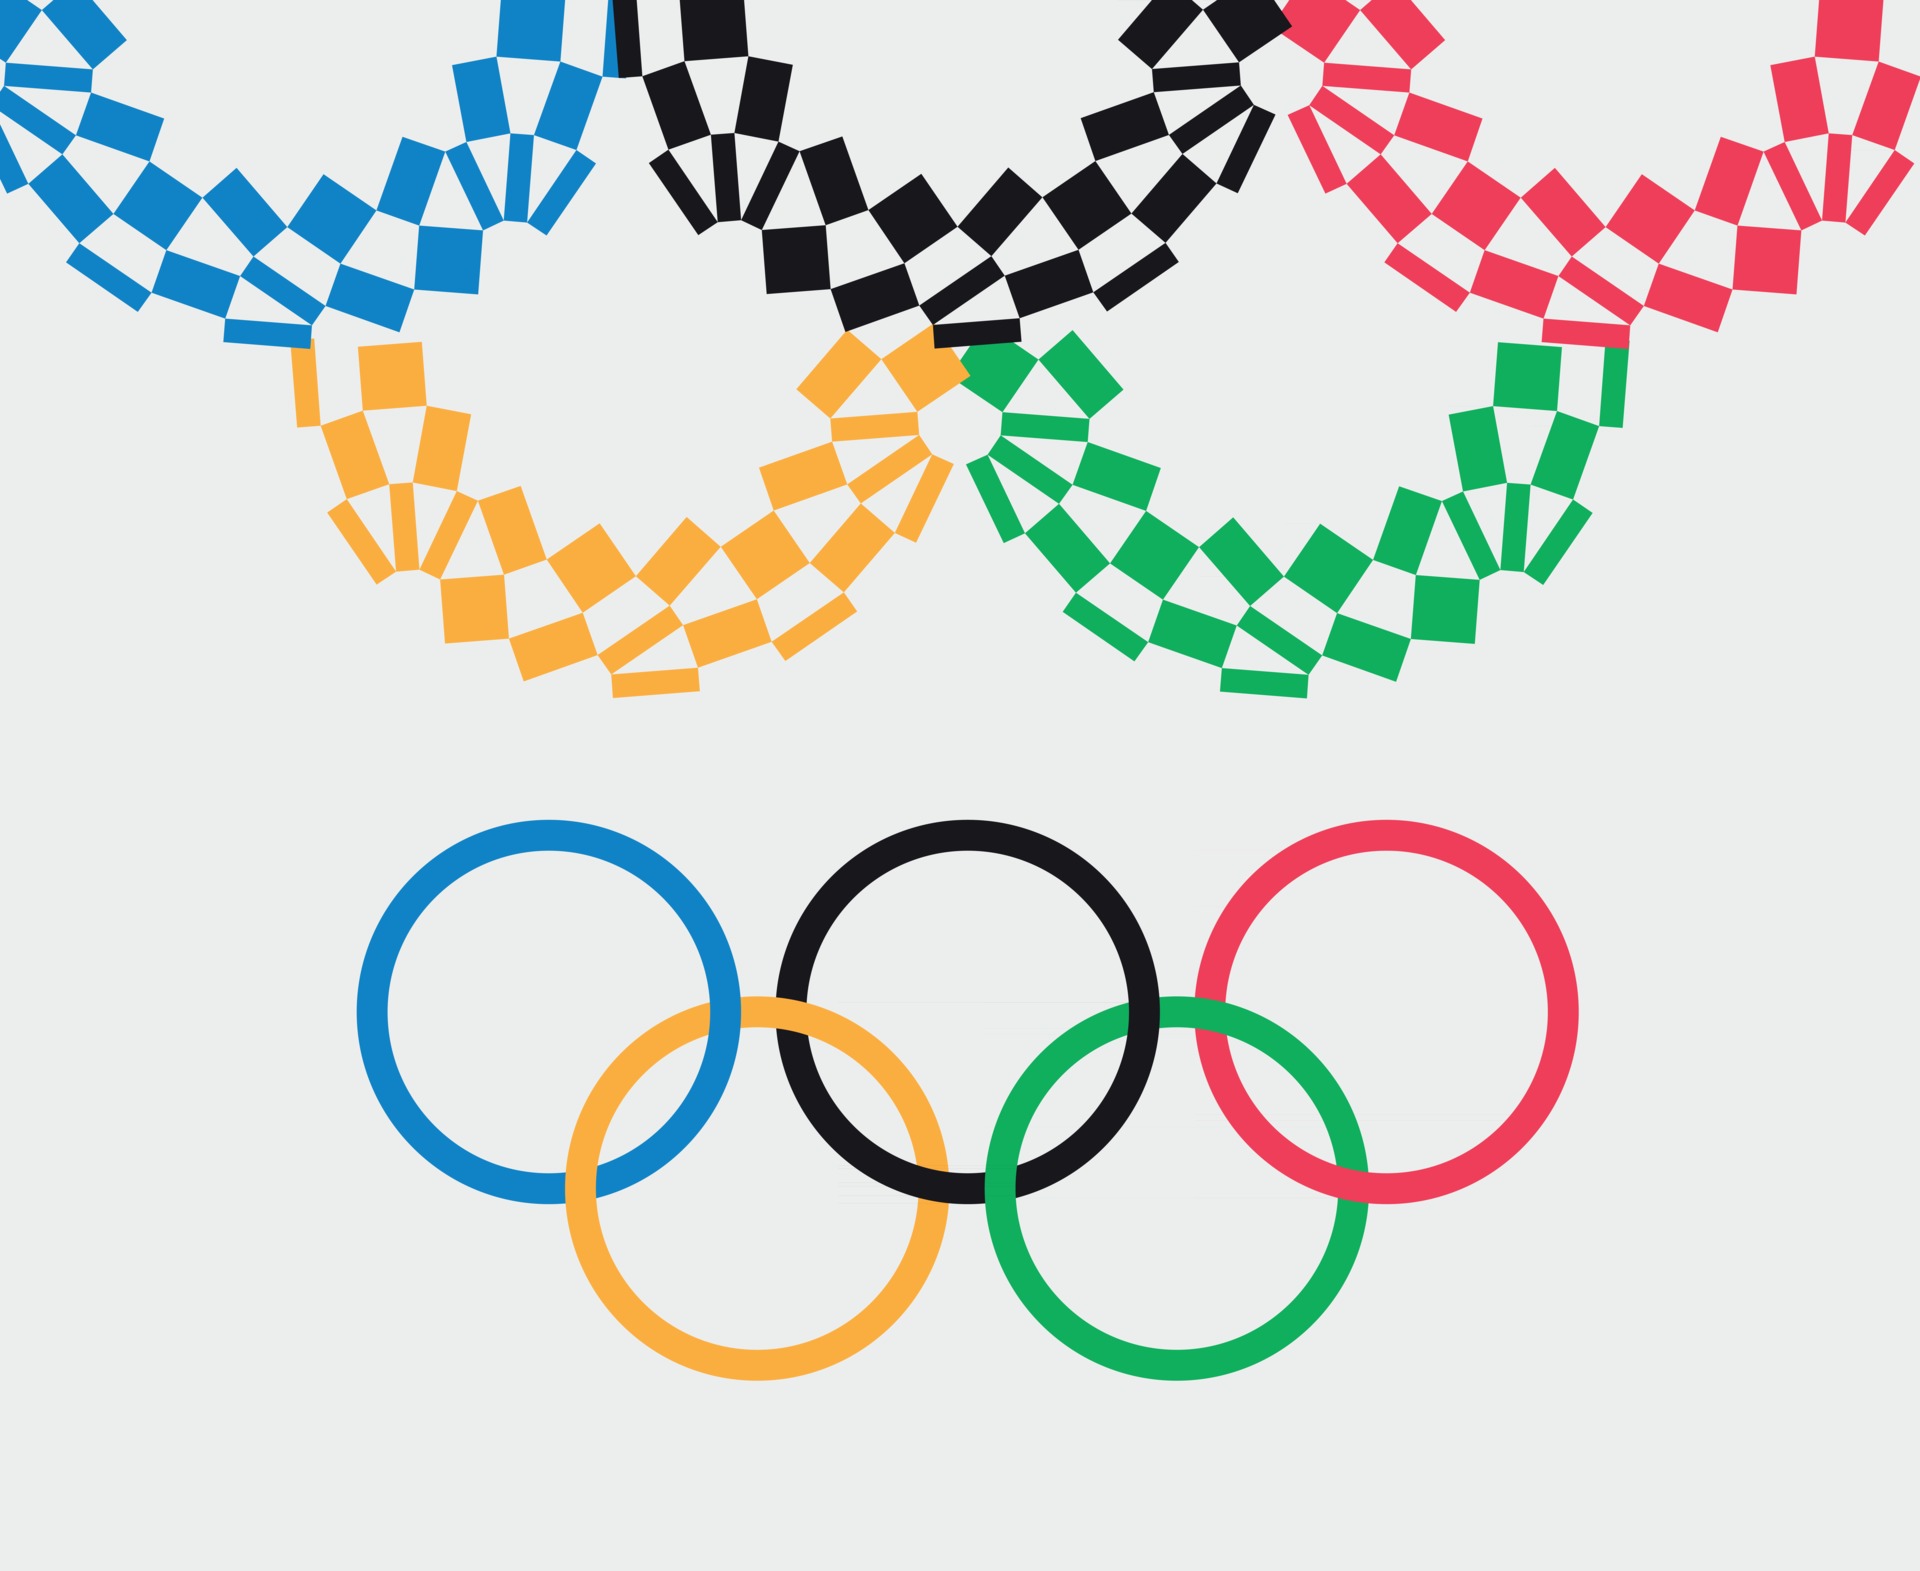 Arte e design: tudo sobre os símbolos dos Jogos Olímpicos de